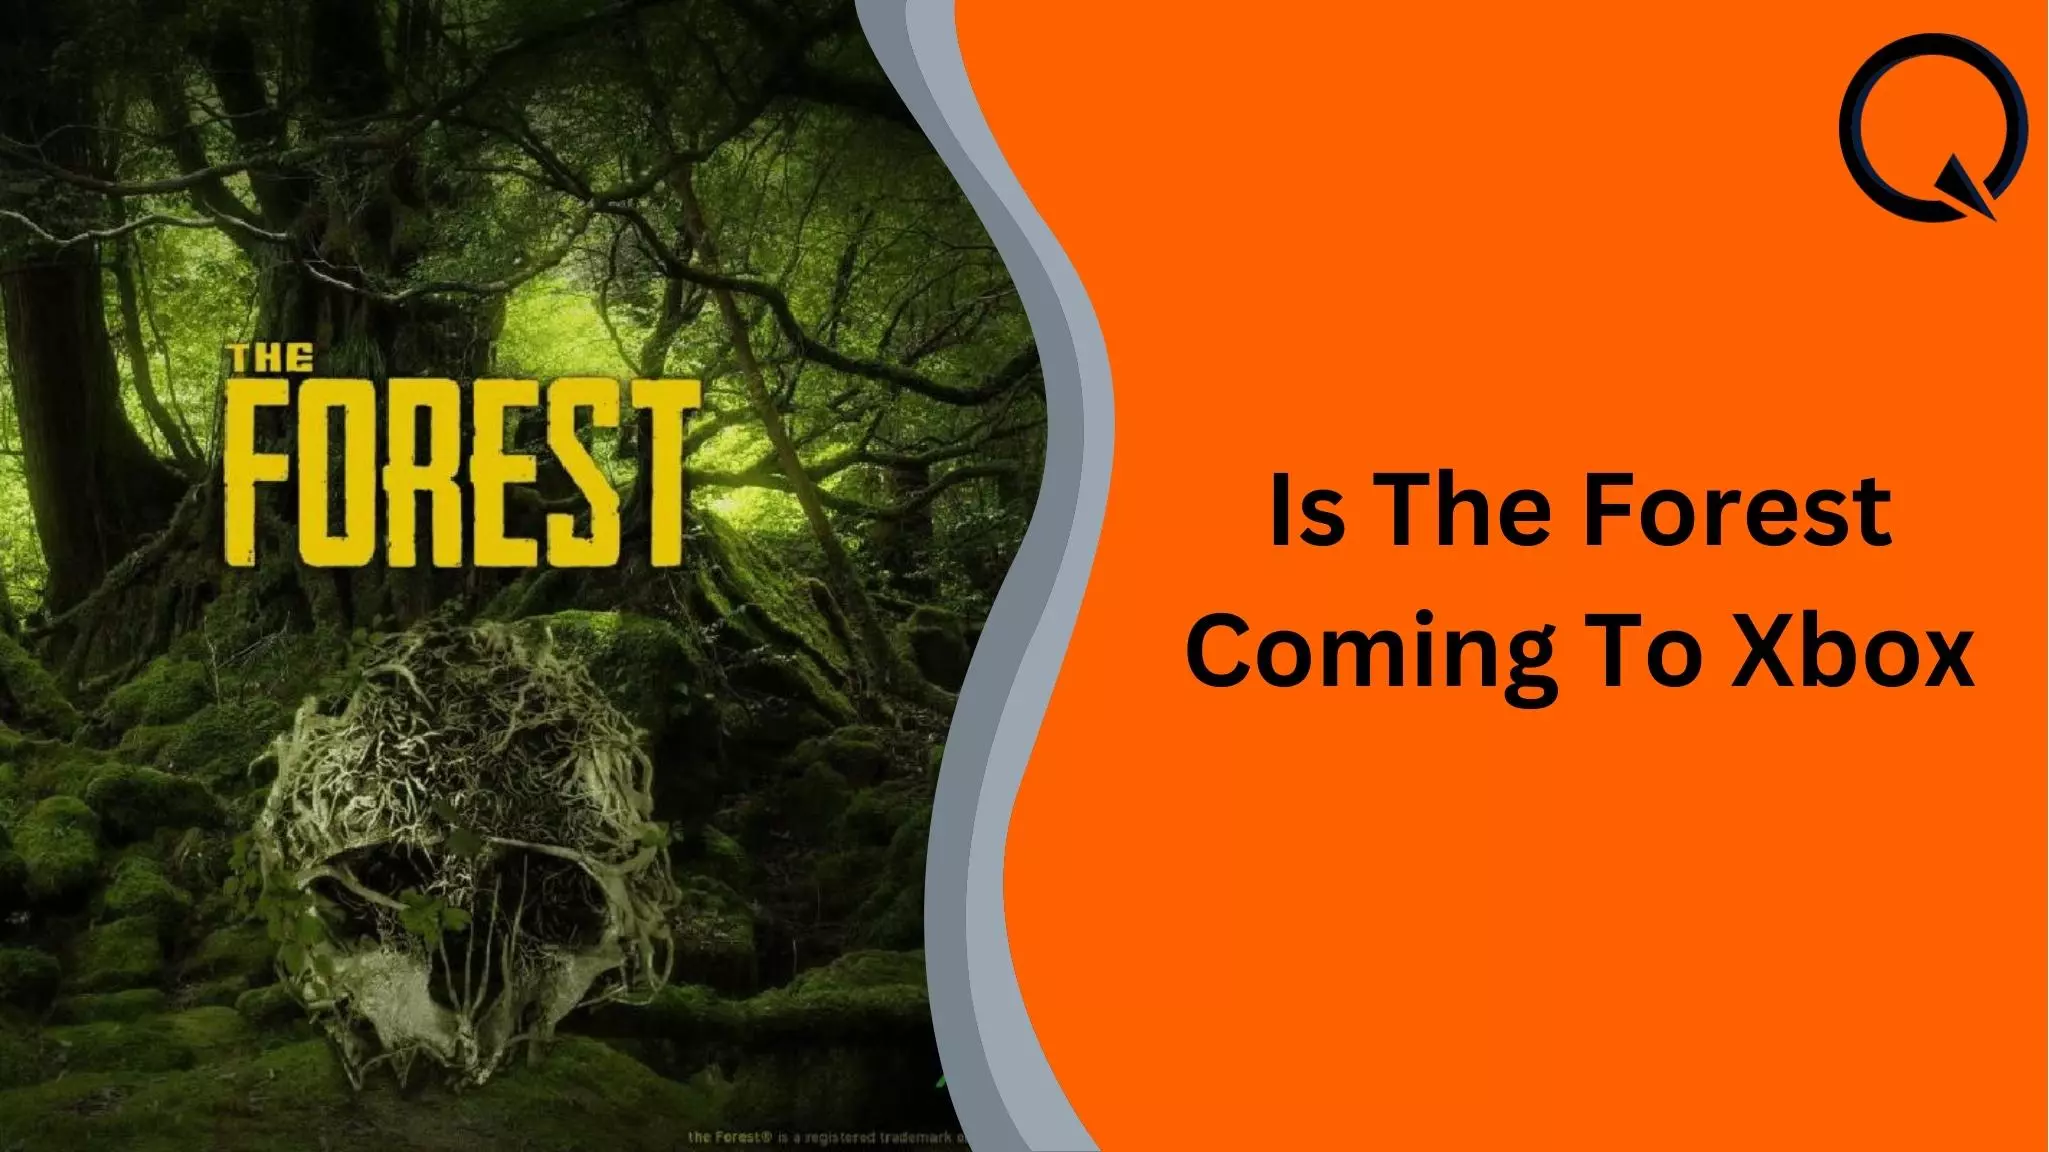 Implicaties schrijven Zwakheid Is The Forest Coming To Xbox? | MercerOnline